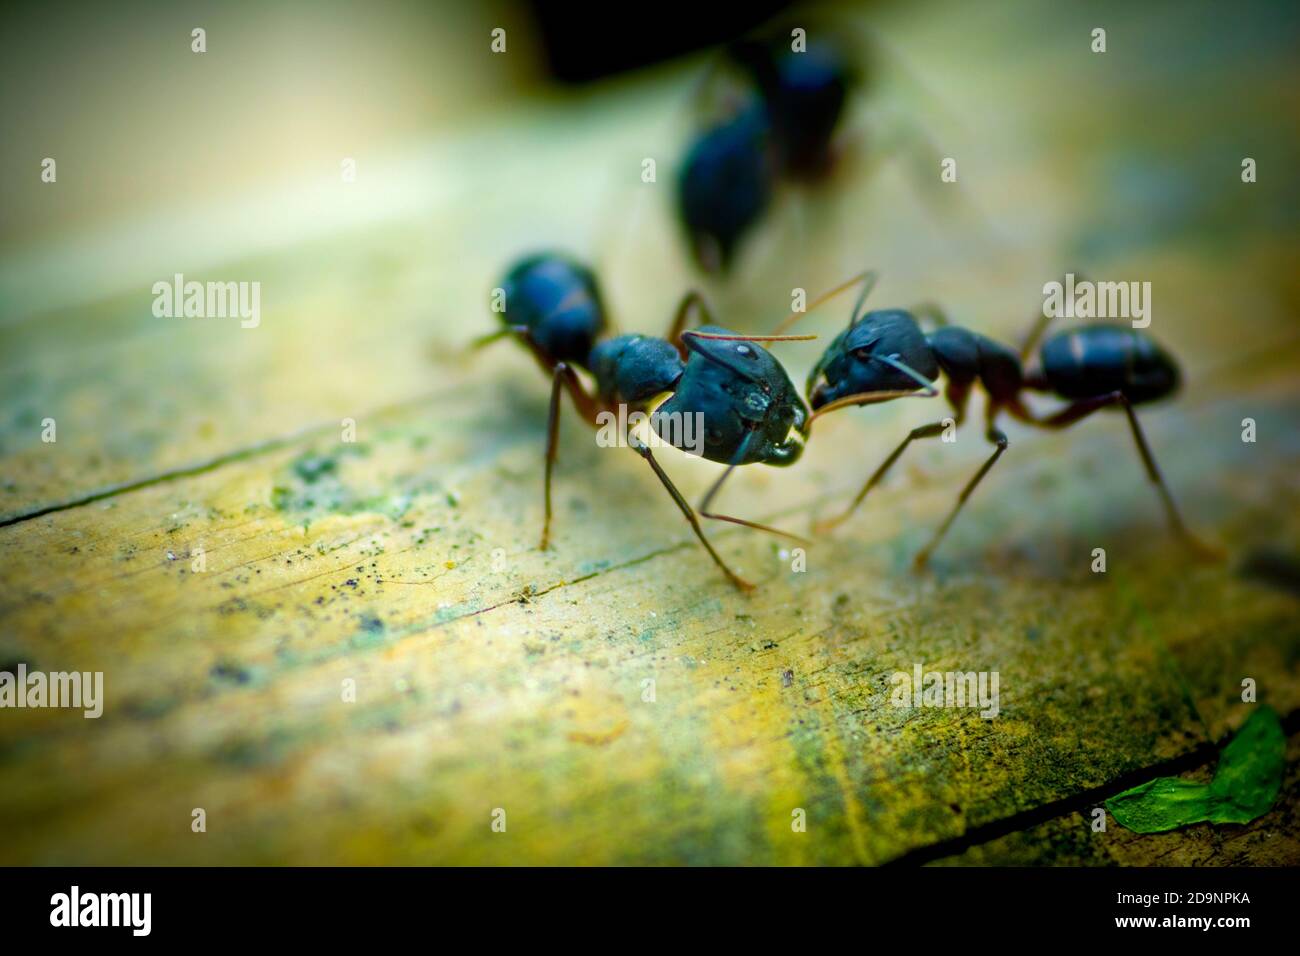 Las hormigas son la lucha de sincronización. Fotografía de vida silvestre Bangladesh. Foto de stock